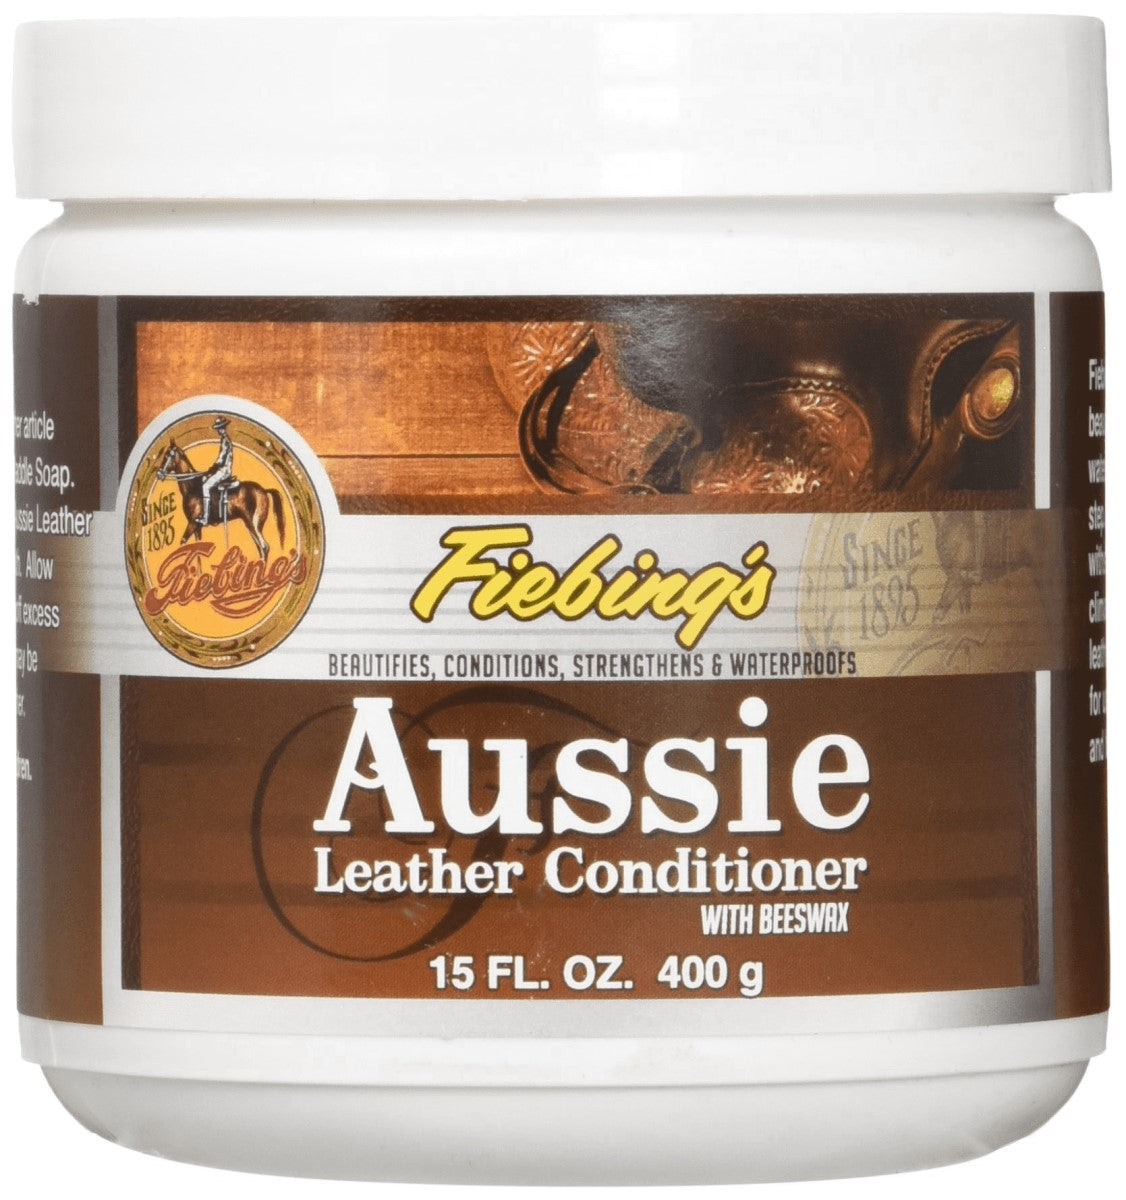 Aussie Leather Conditioner